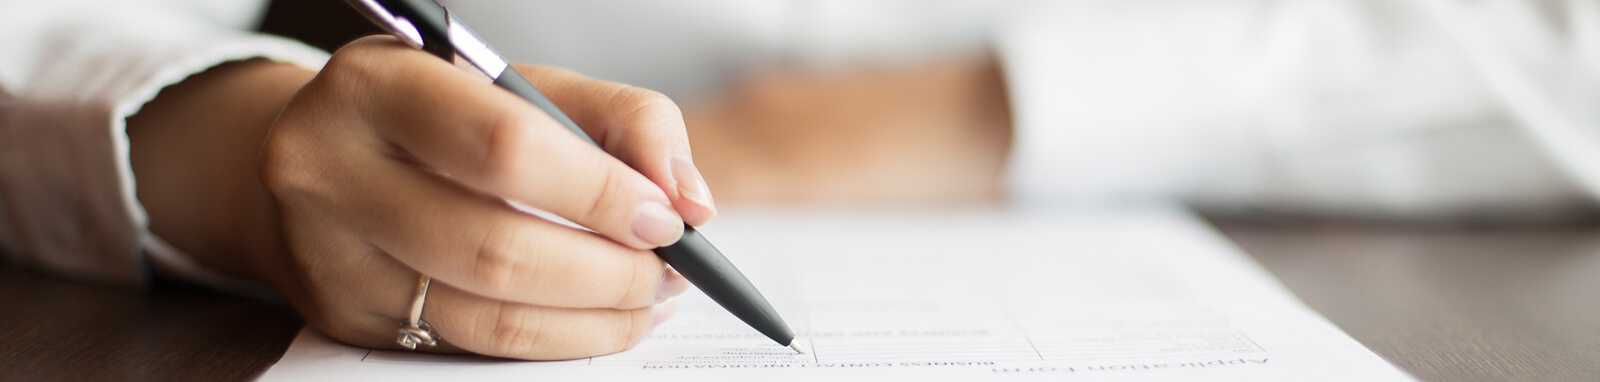 Imagem de uma mão com uma caneta assinando um contrato.